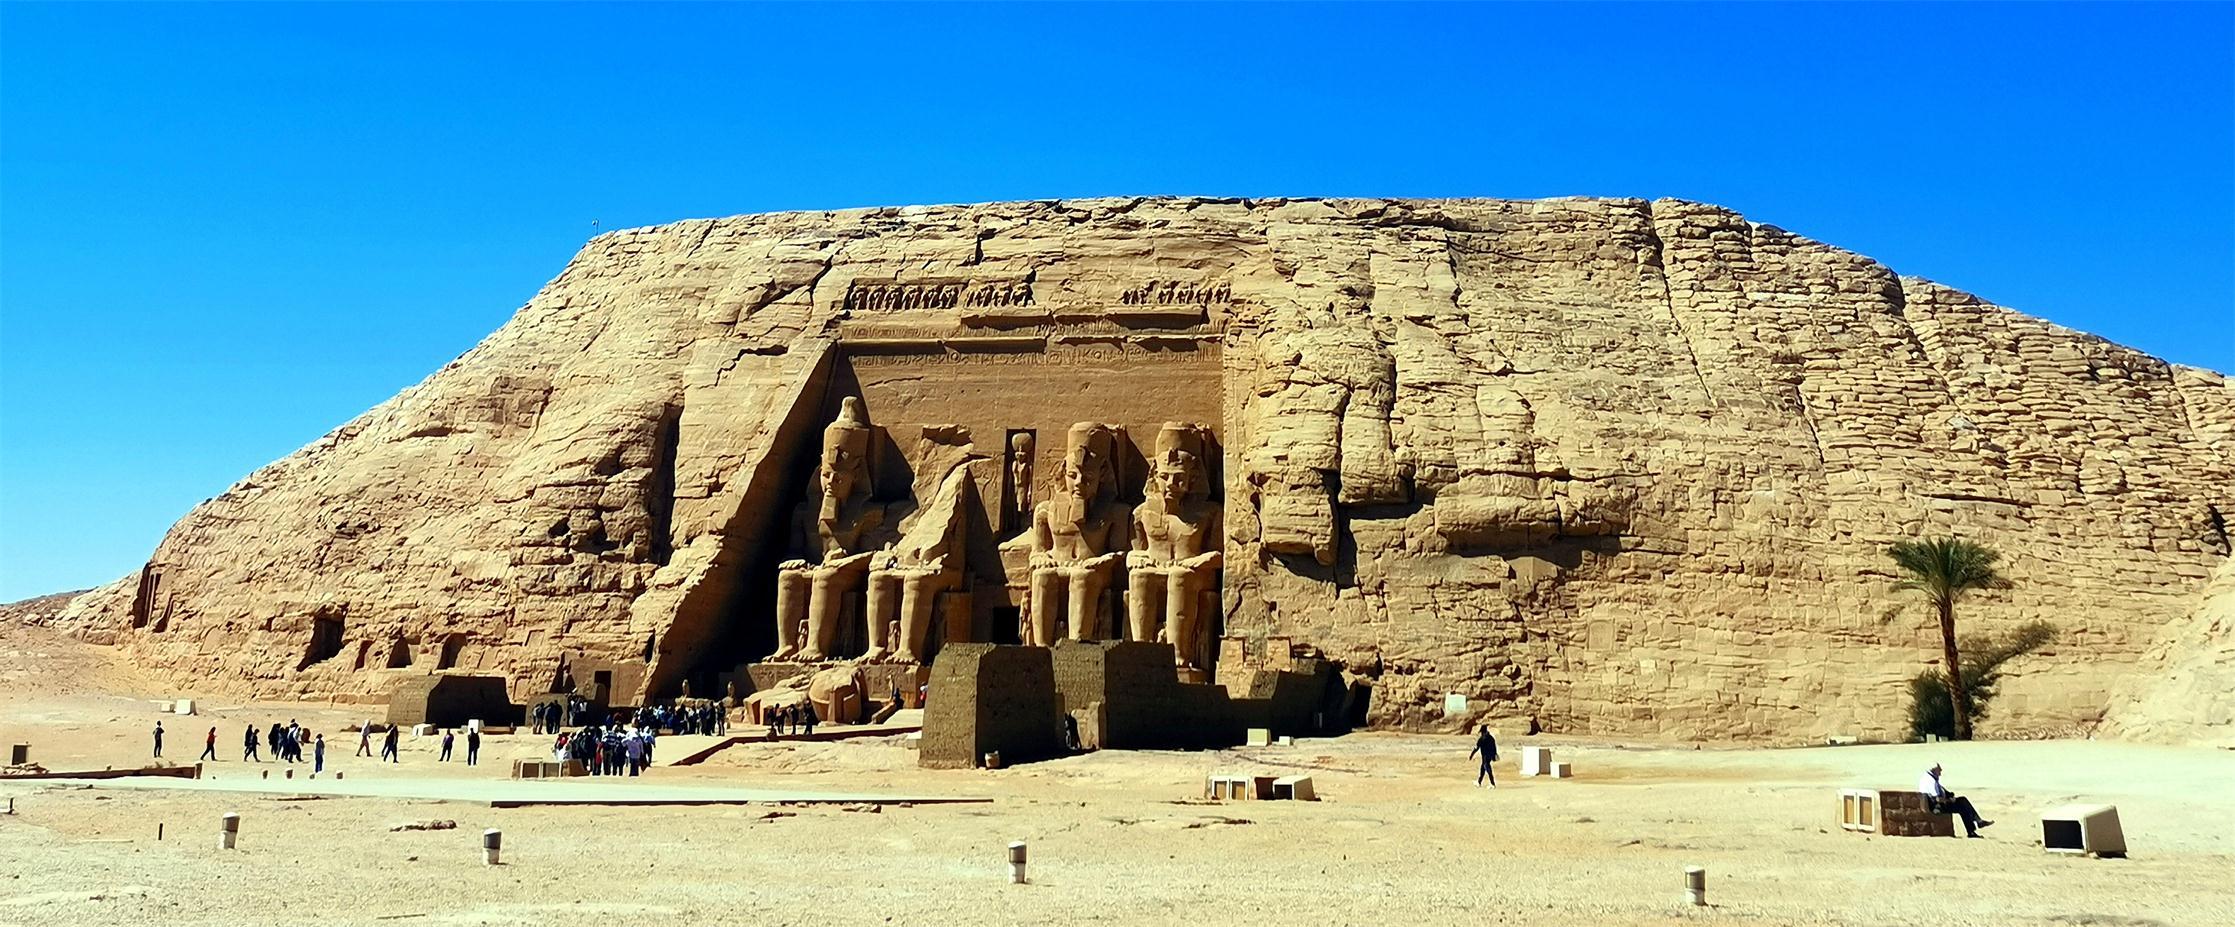 阿布辛贝埃及神庙,高清图片,旅游景点-桌面城市